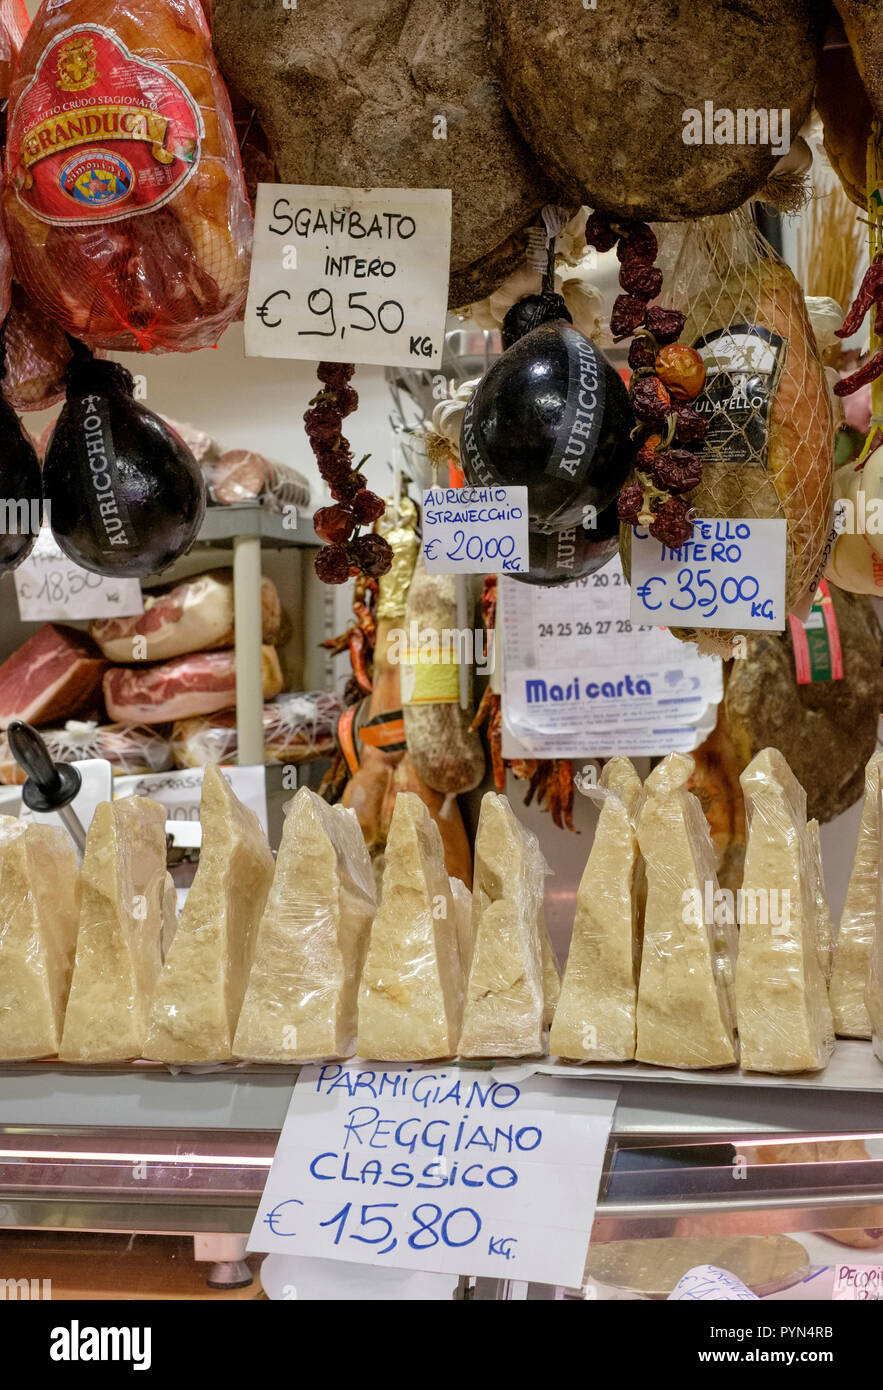 Affichage des Sgamabto Prosciutto et jambon Parmigiano reggio classico sur un étal de marché à Florence, Italie. Banque D'Images